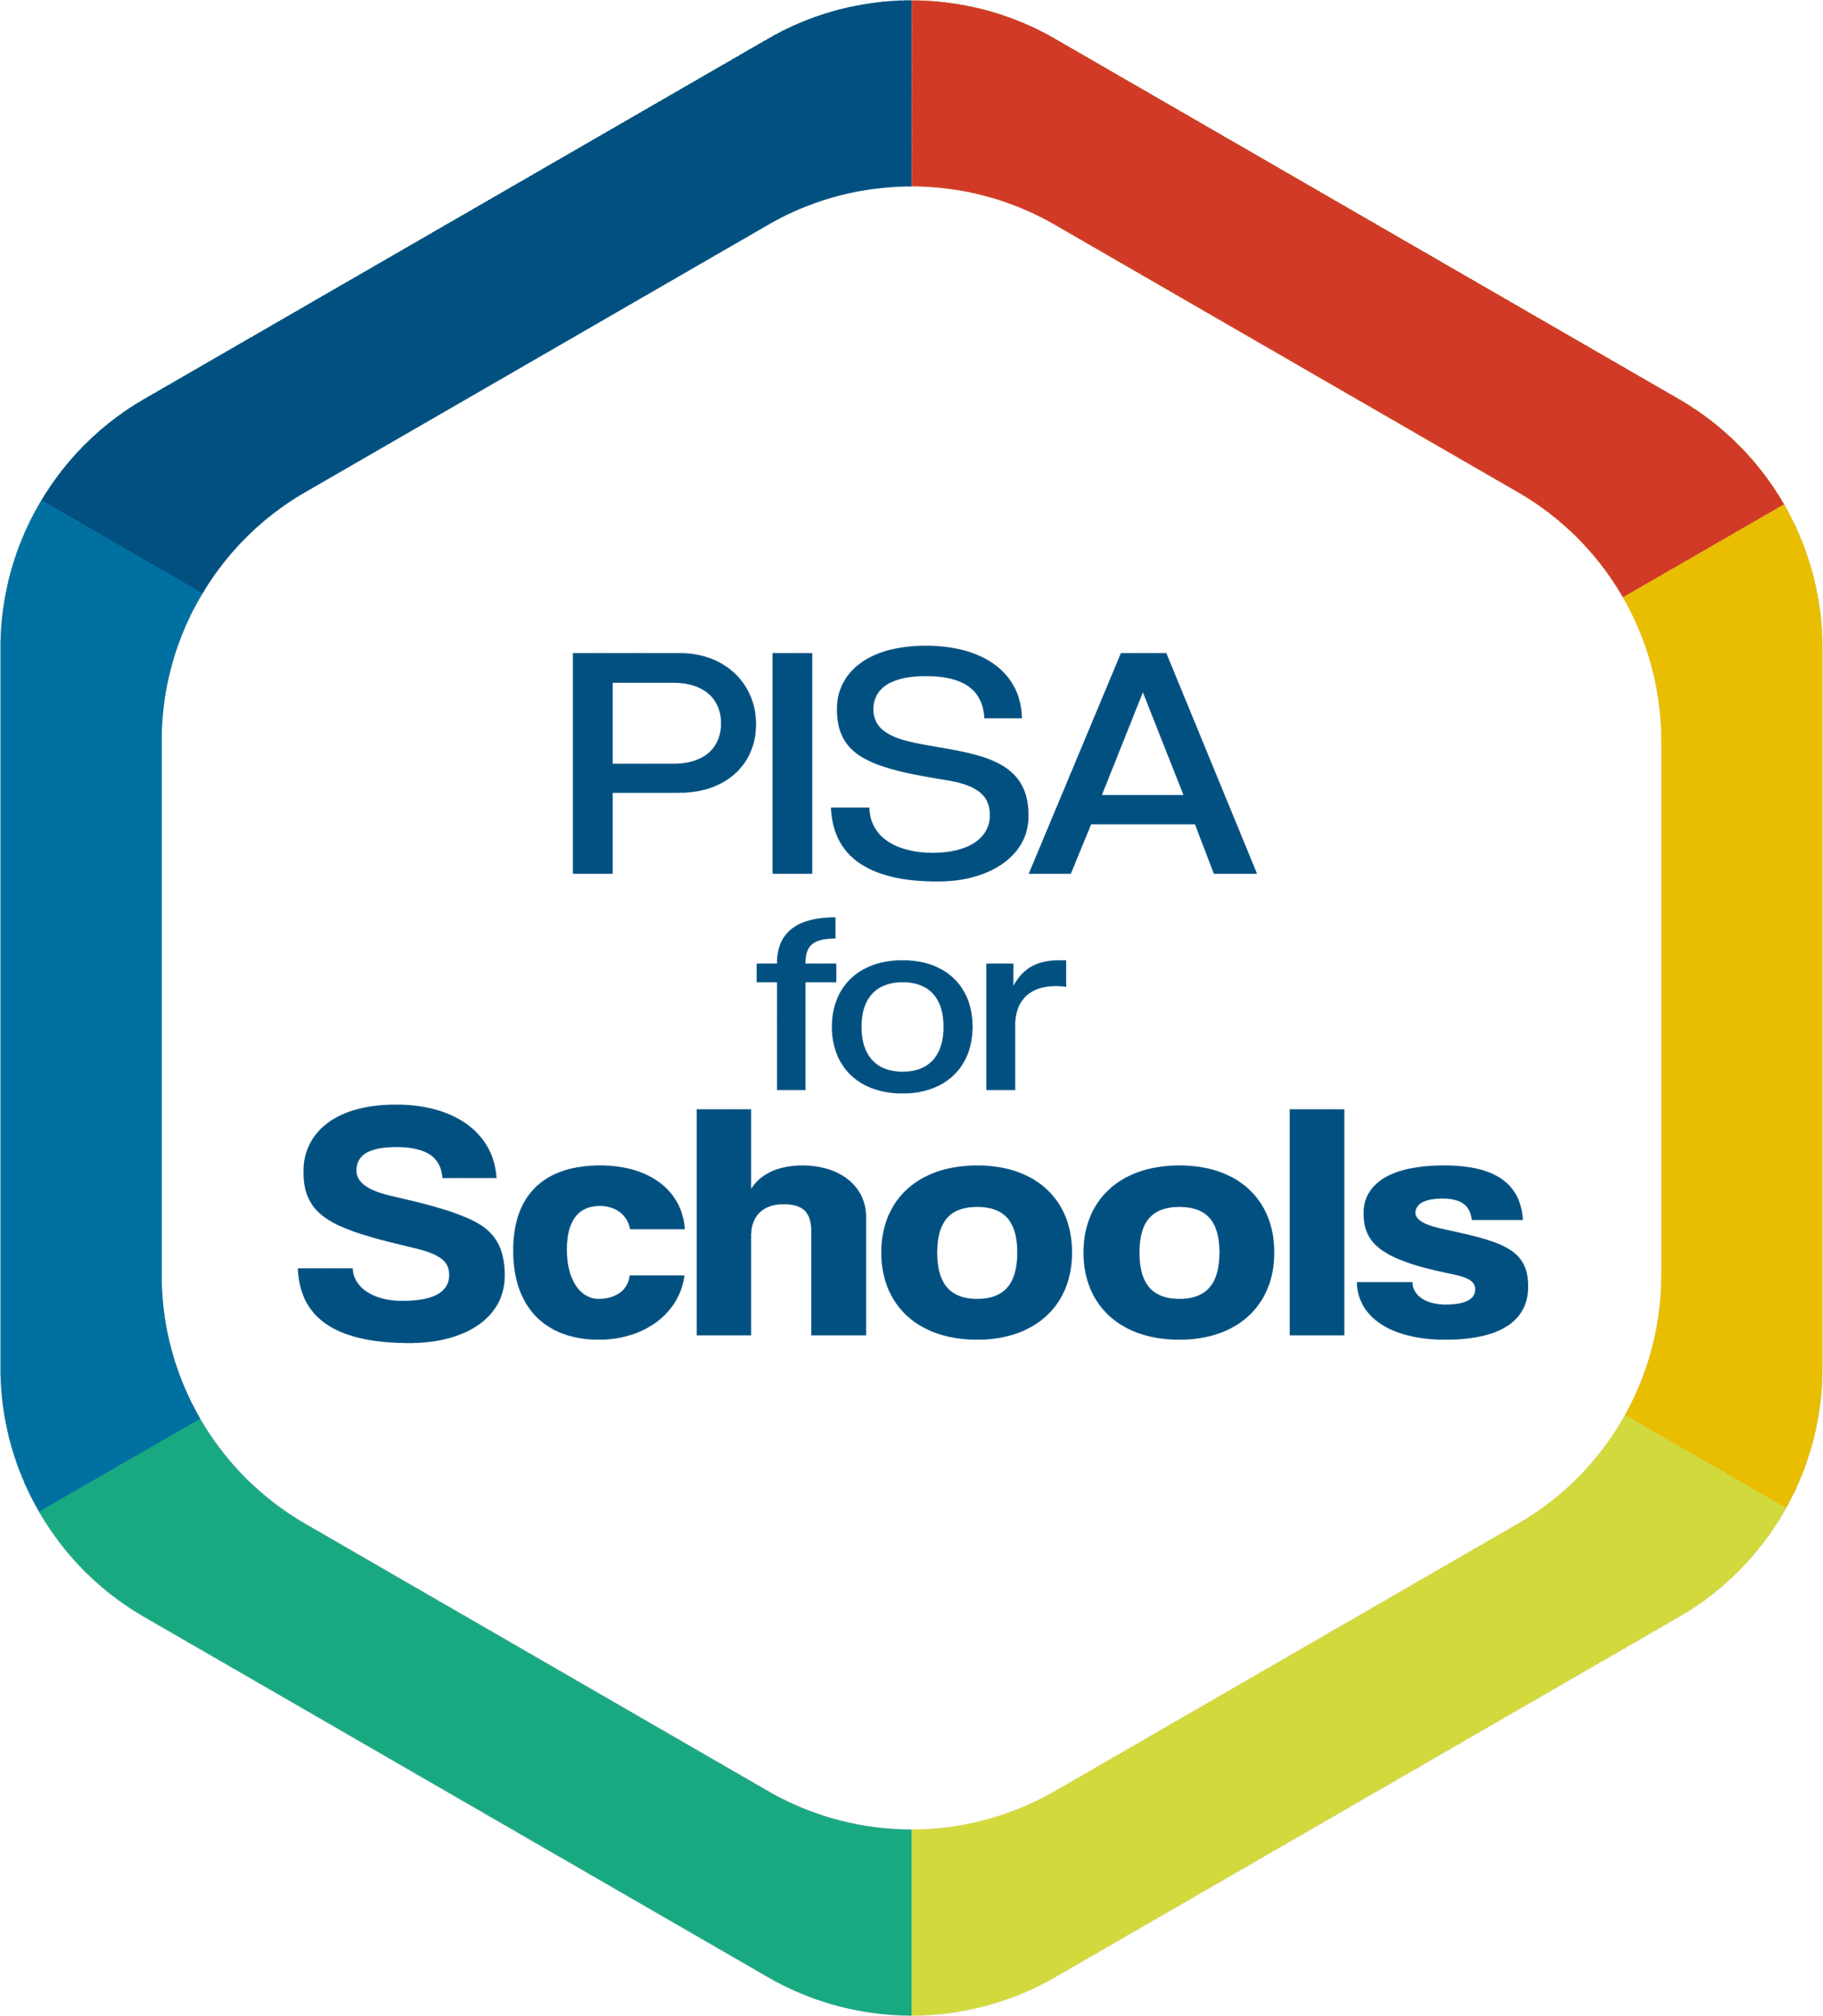 PISA for schools logo center white